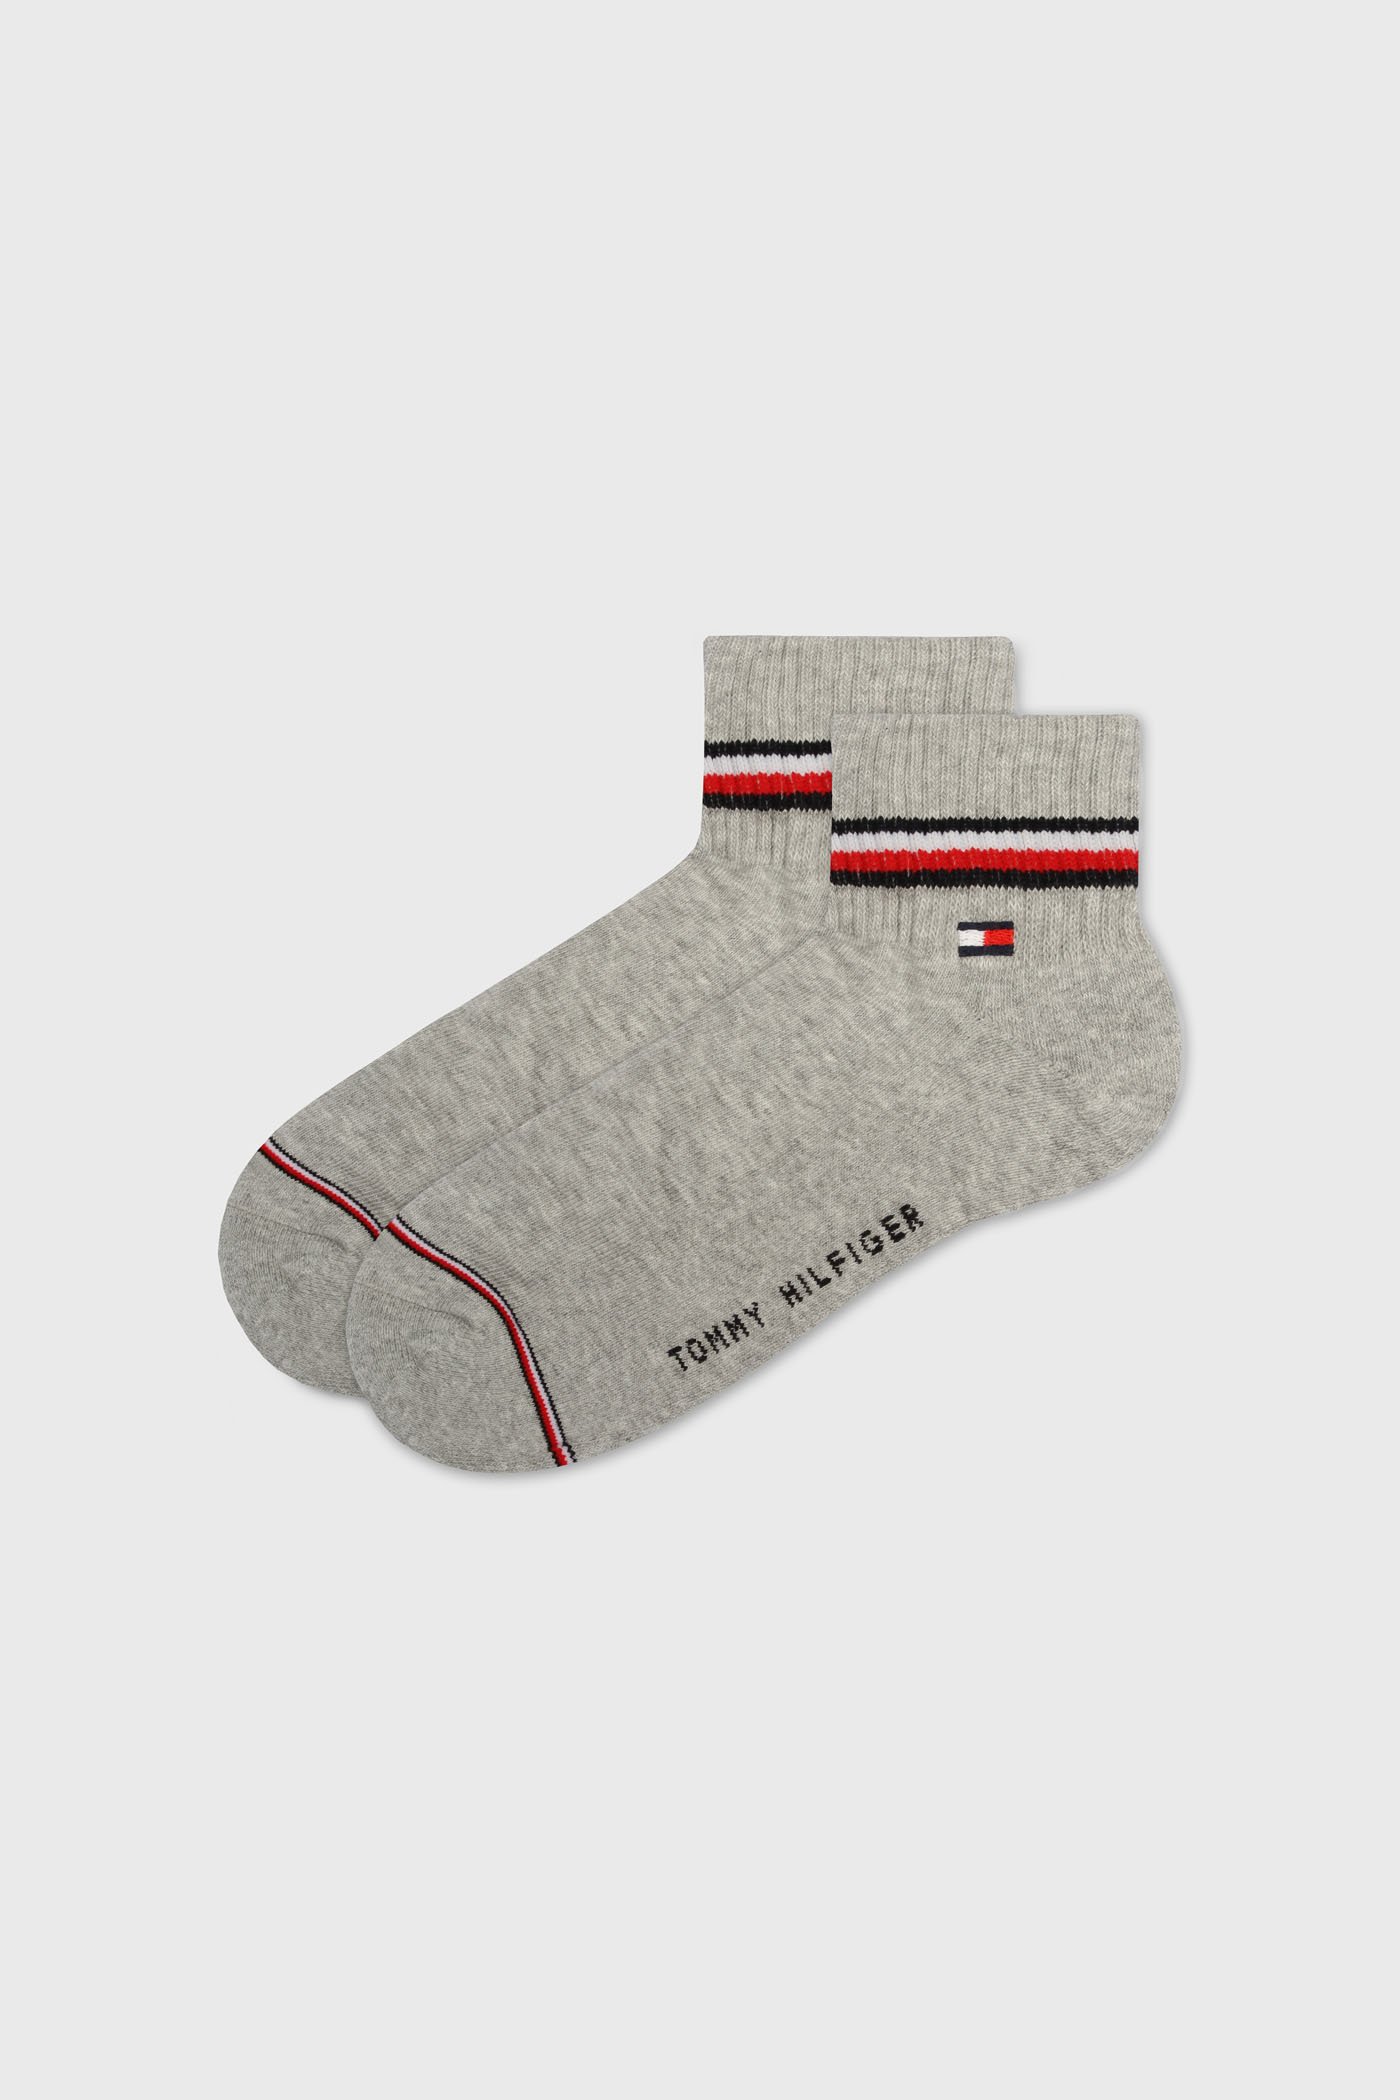 2 PACK členkových ponožiek Tommy Hilfiger Iconic Original | Astratex.sk